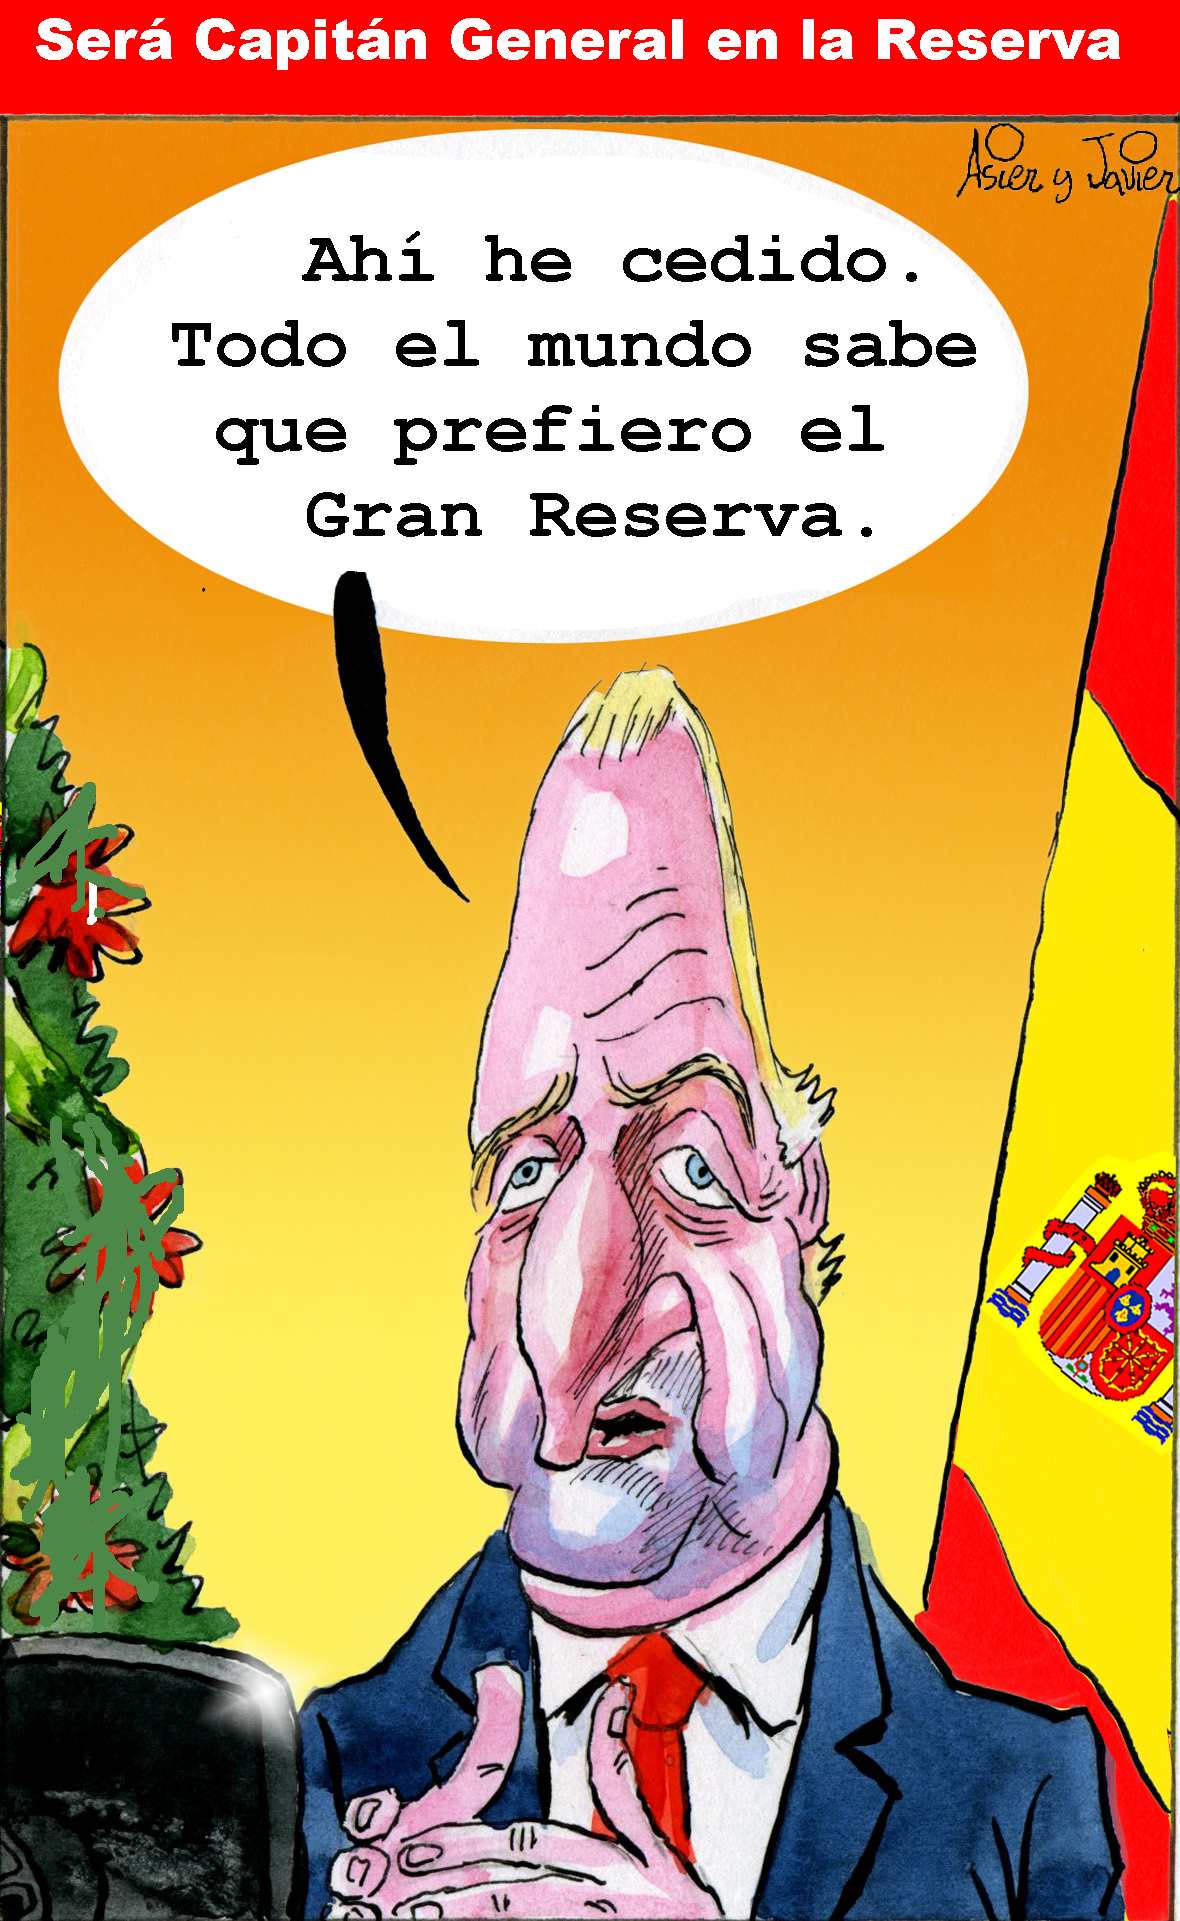 Juan Carlos será Capitán General en la Reserva. Rey, Caricatura, Humor